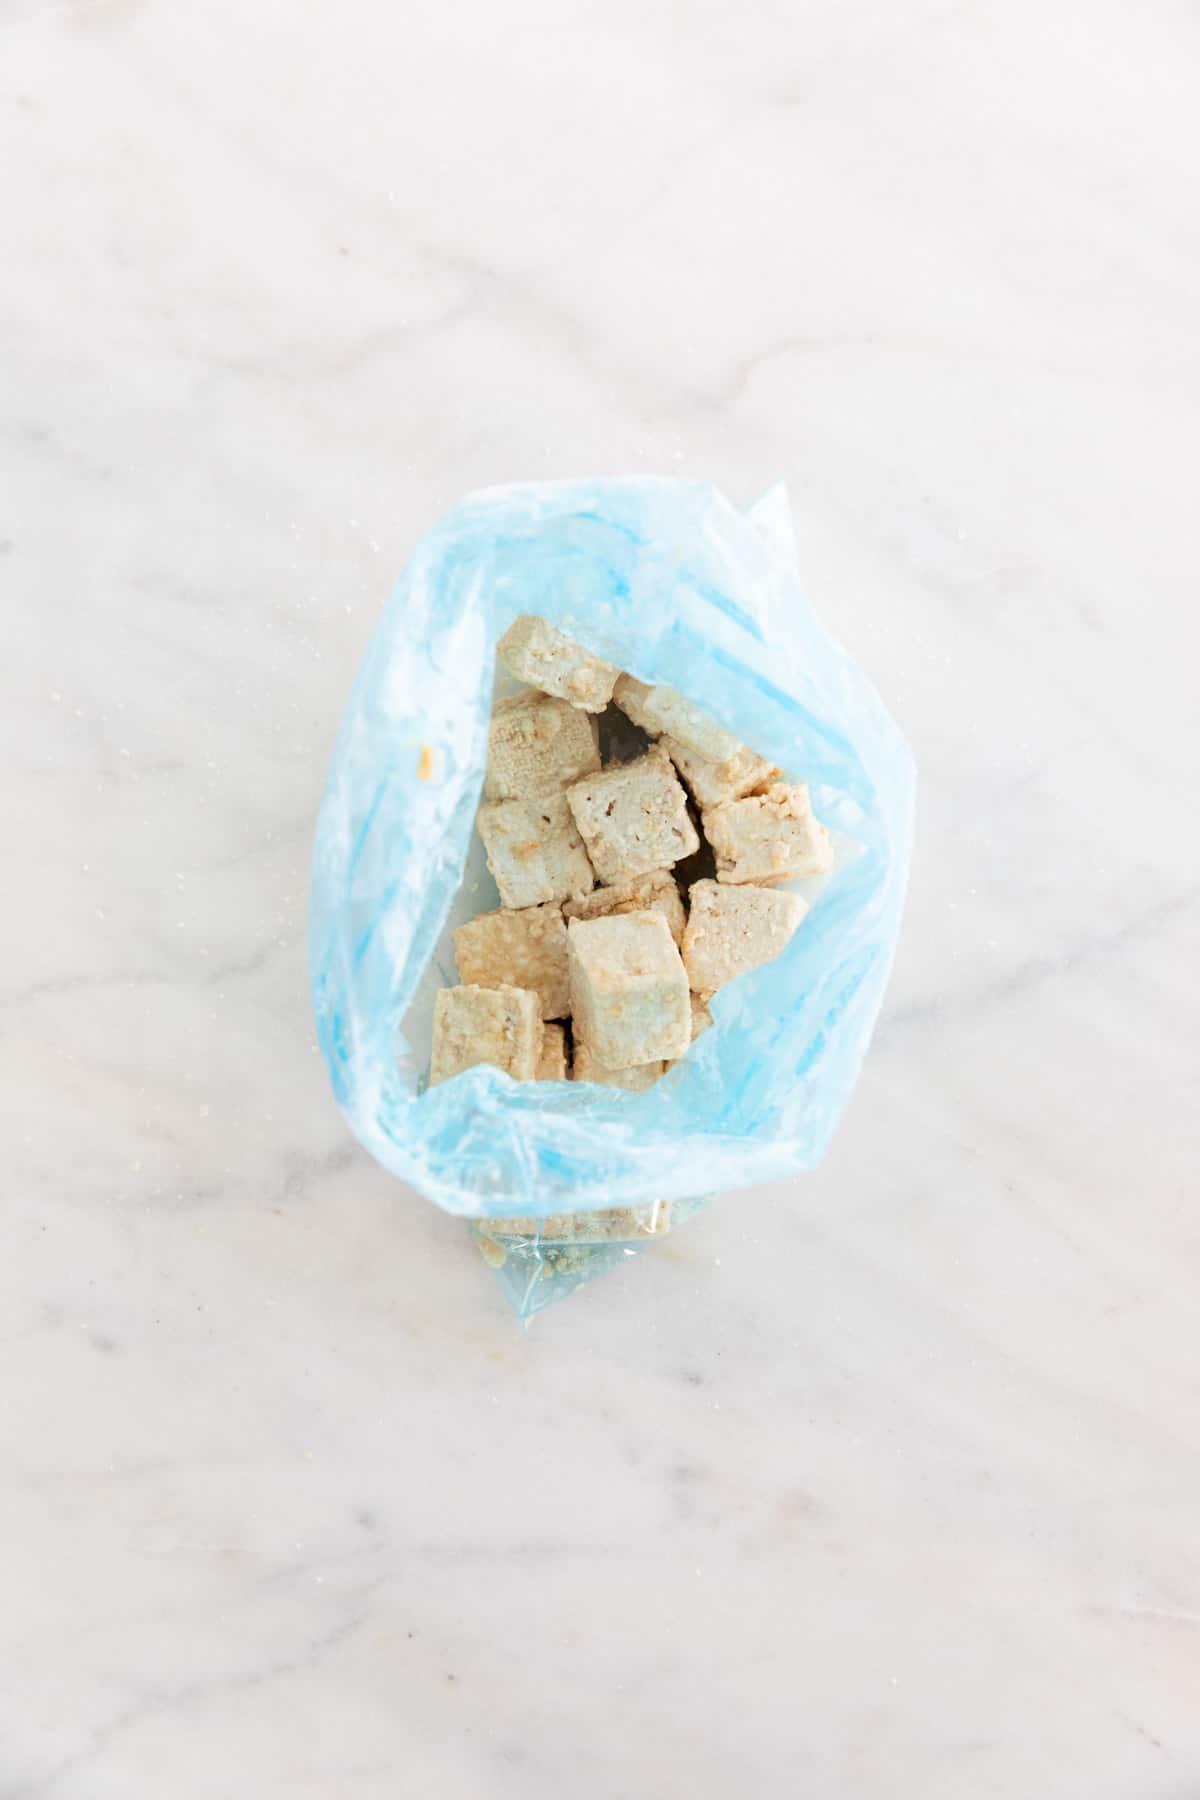 Tofu cubes coated in cornstarch inside a freezer bag.